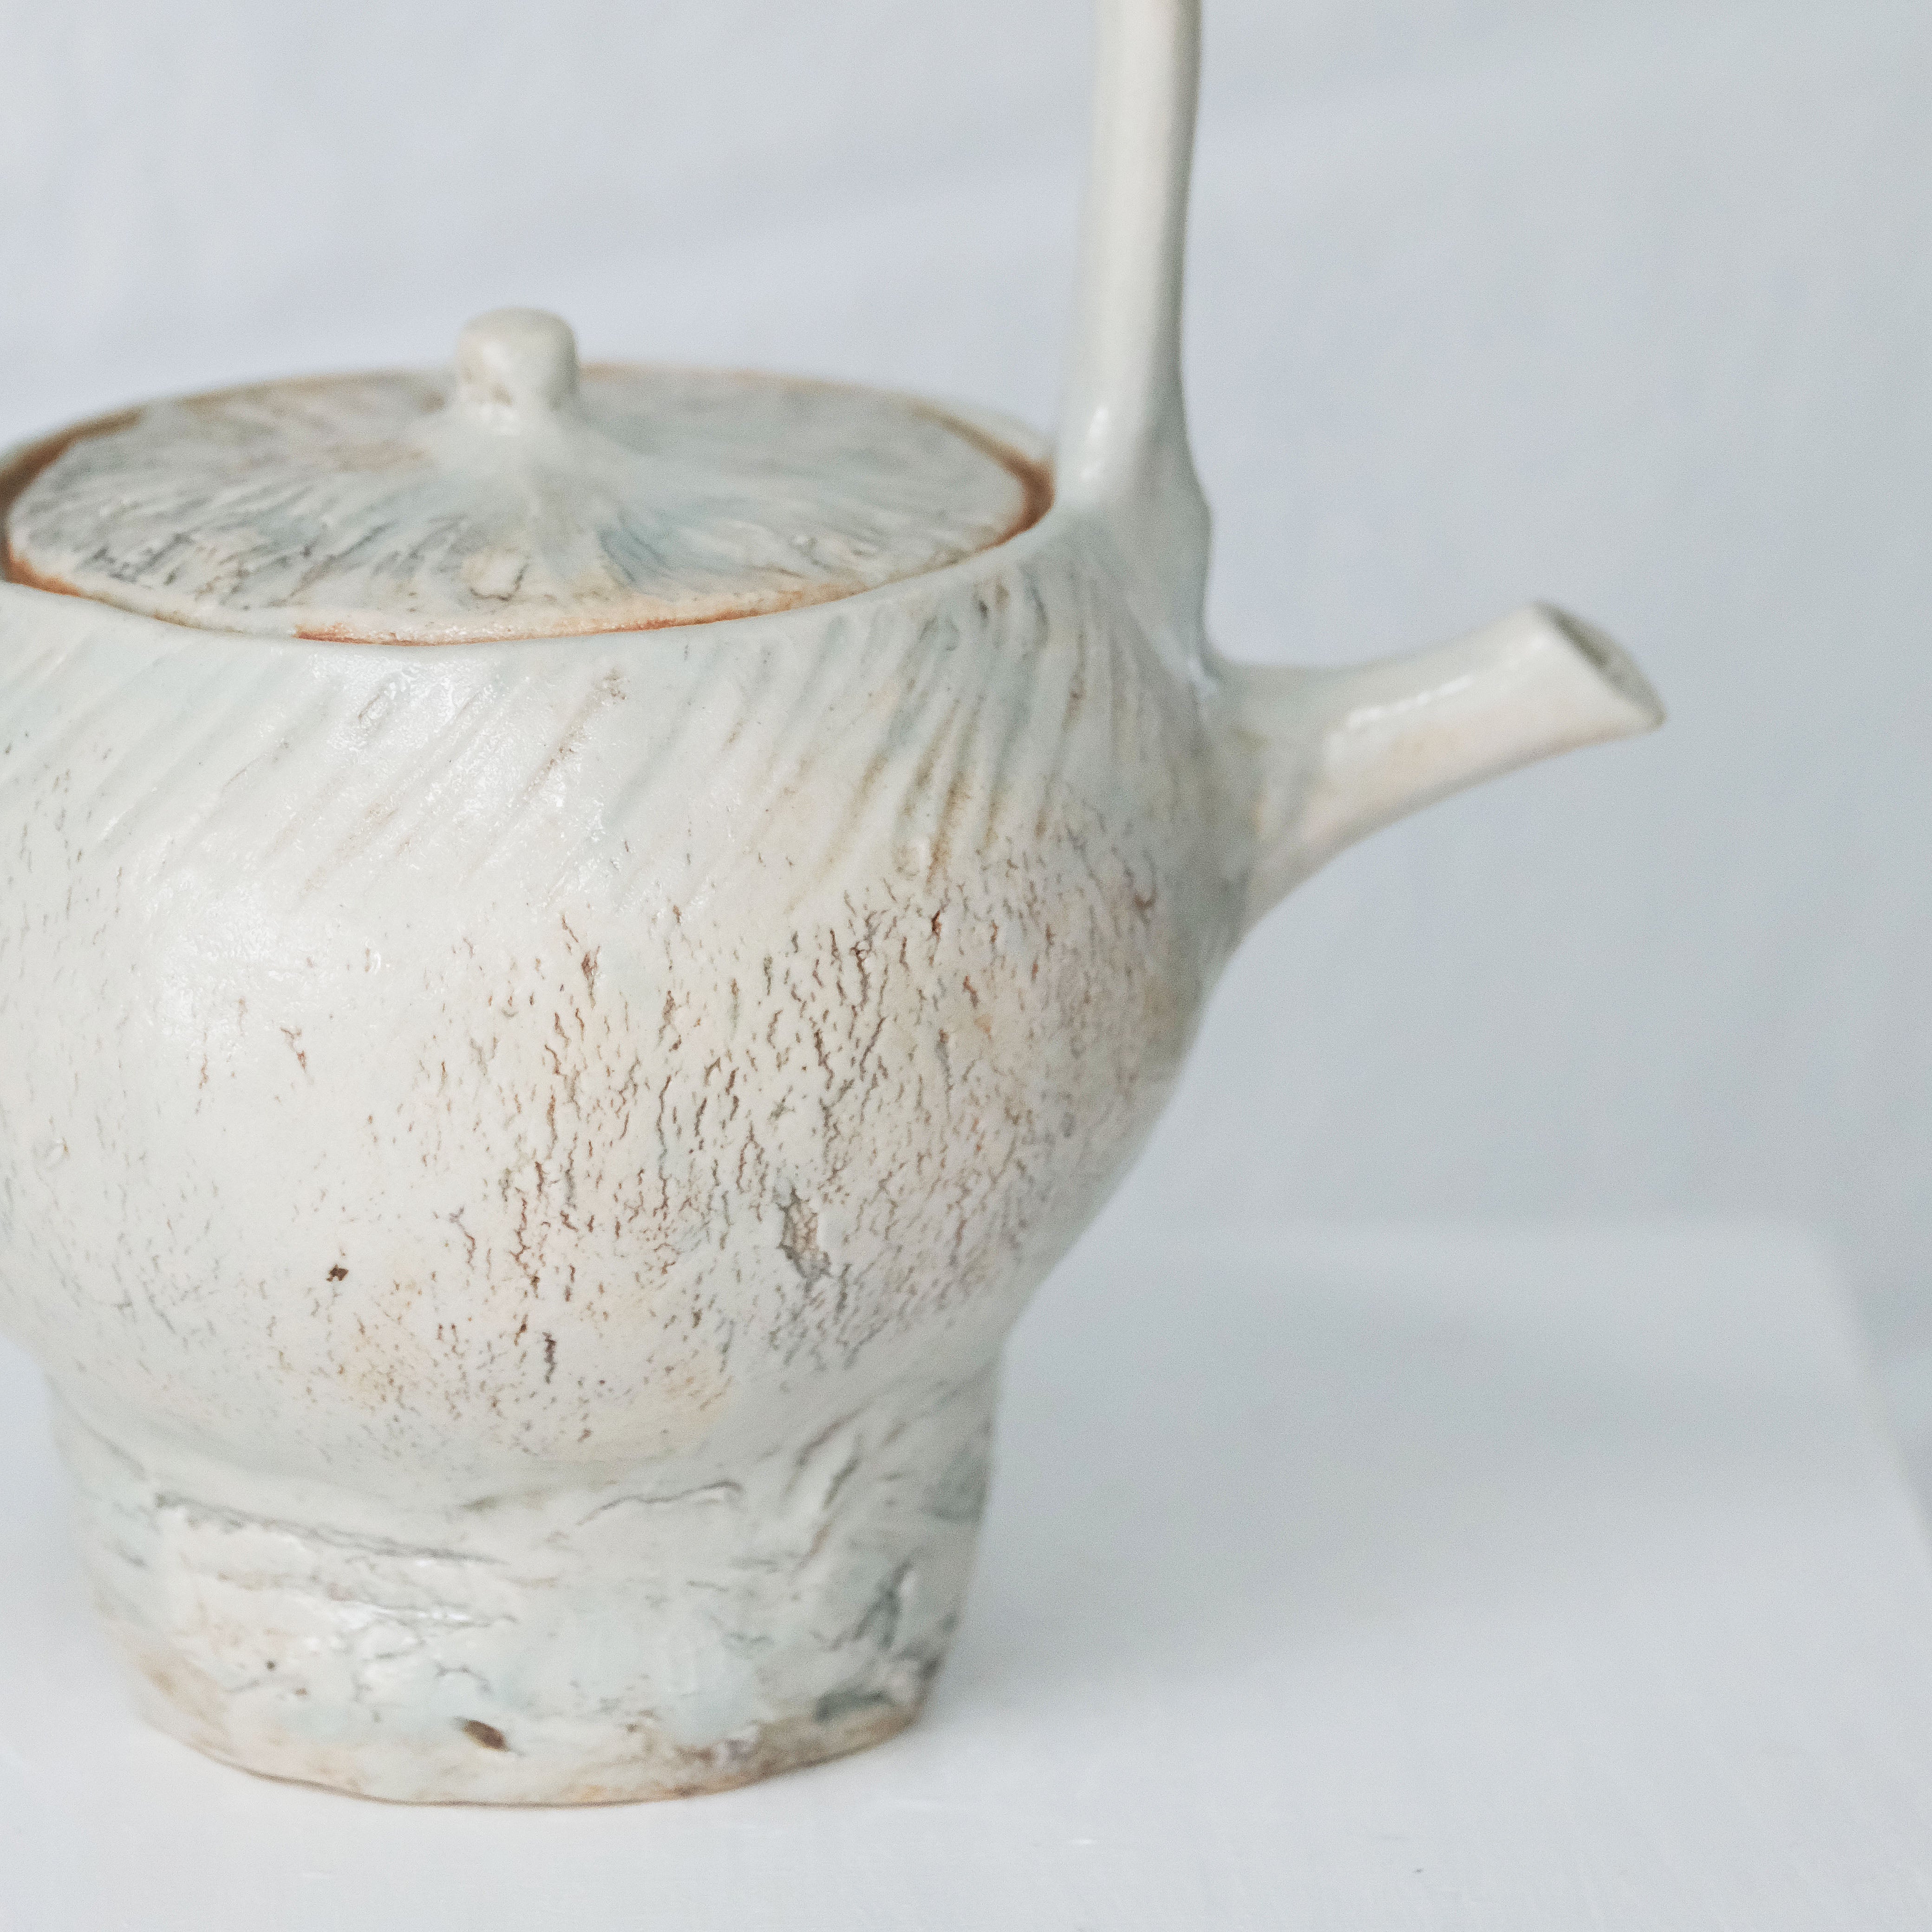 Small Celadon Teapot